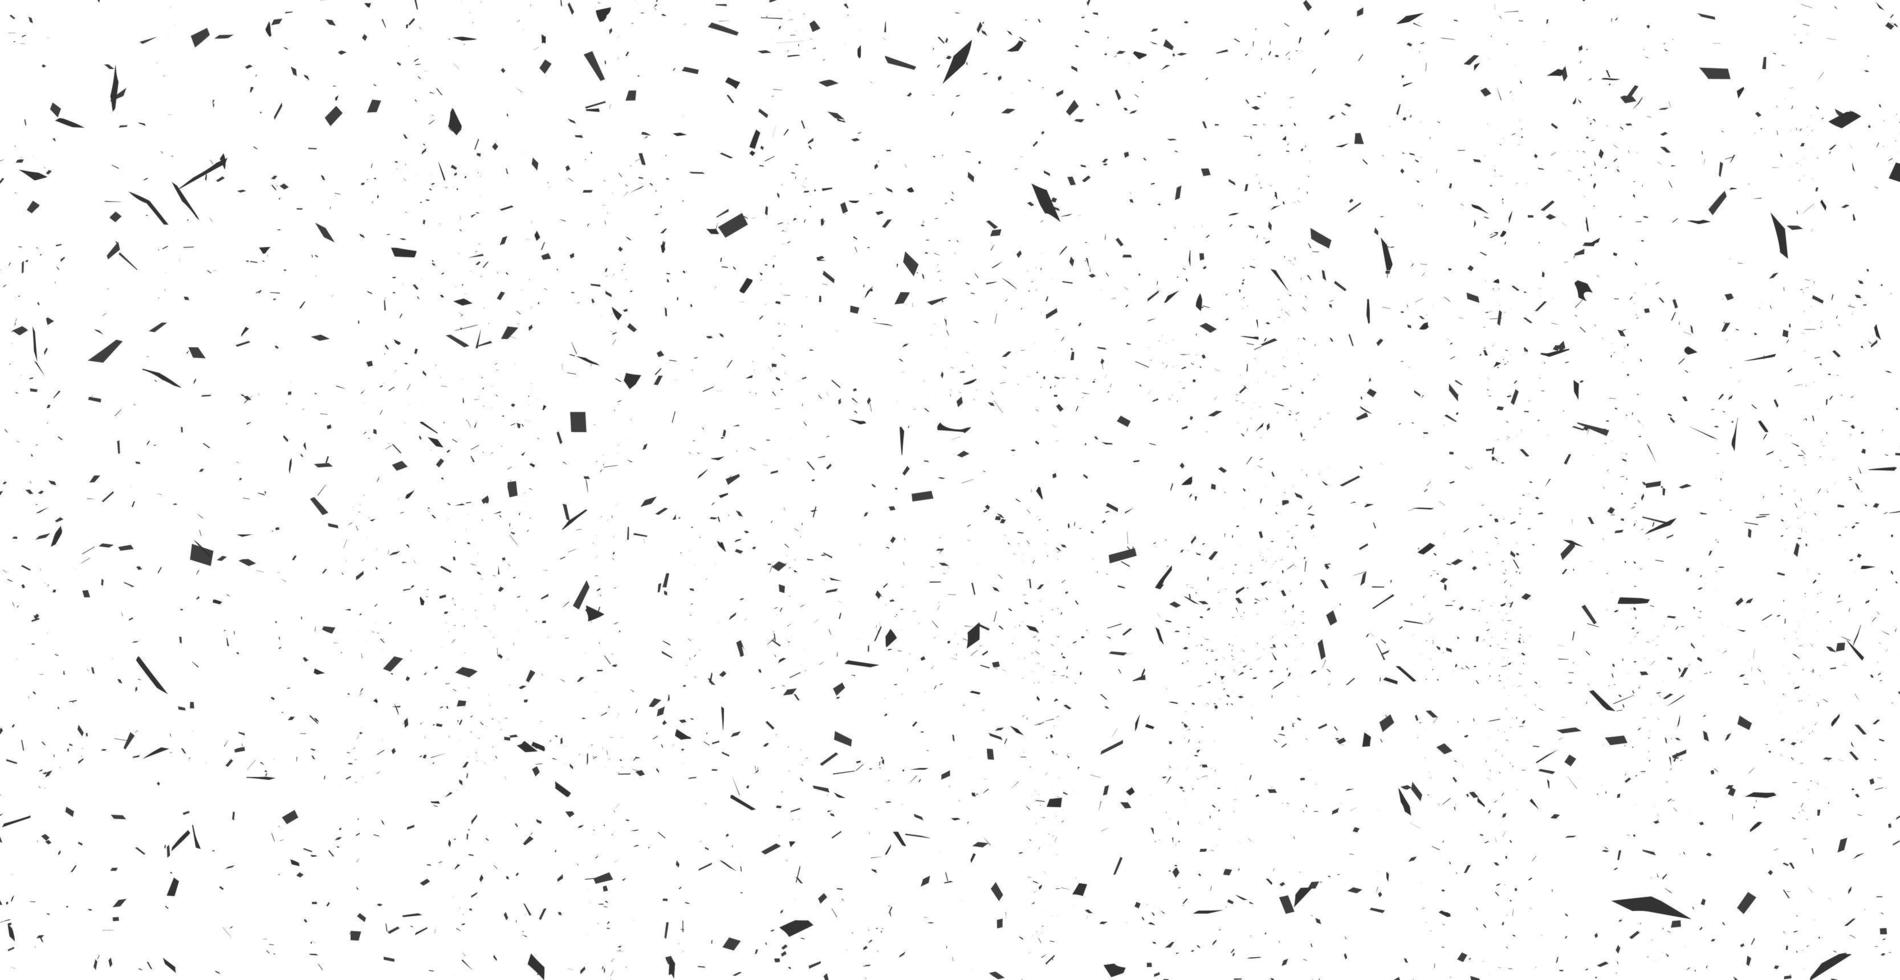 grunge zwarte lijnen en punten op een witte achtergrond - vector